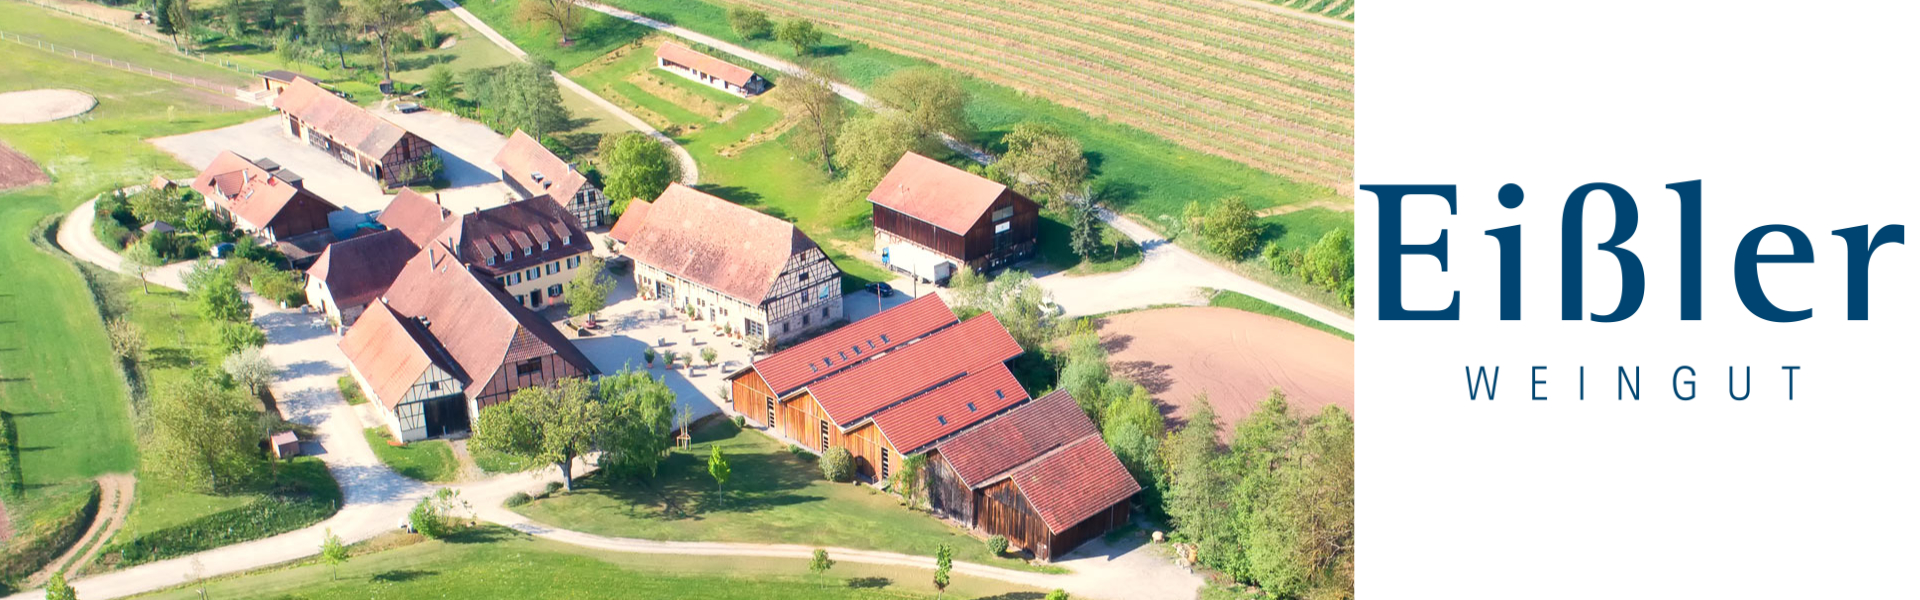 Weingut Steinbachhof - Eißler